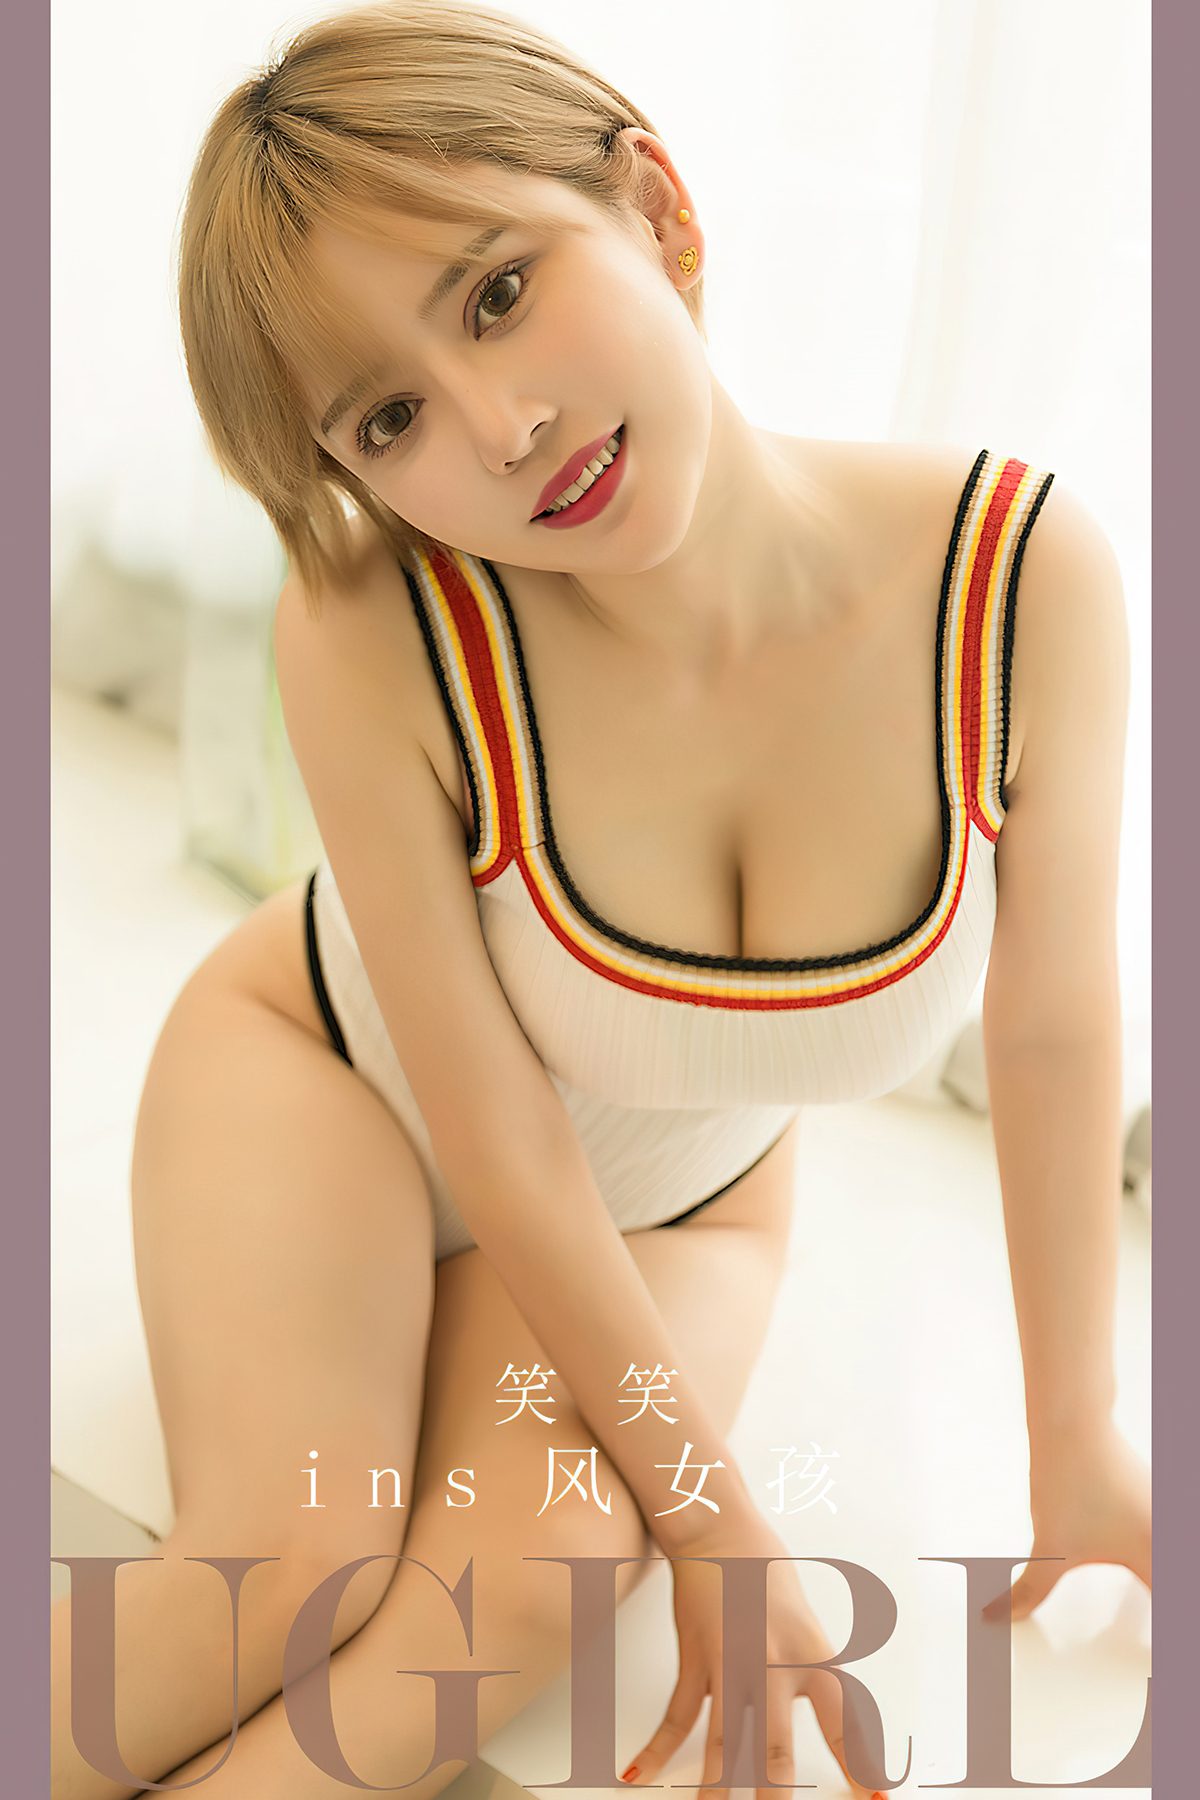 Ugirls App尤果圈 No 2700 Xiao Xiao 0004 9893546624.jpg